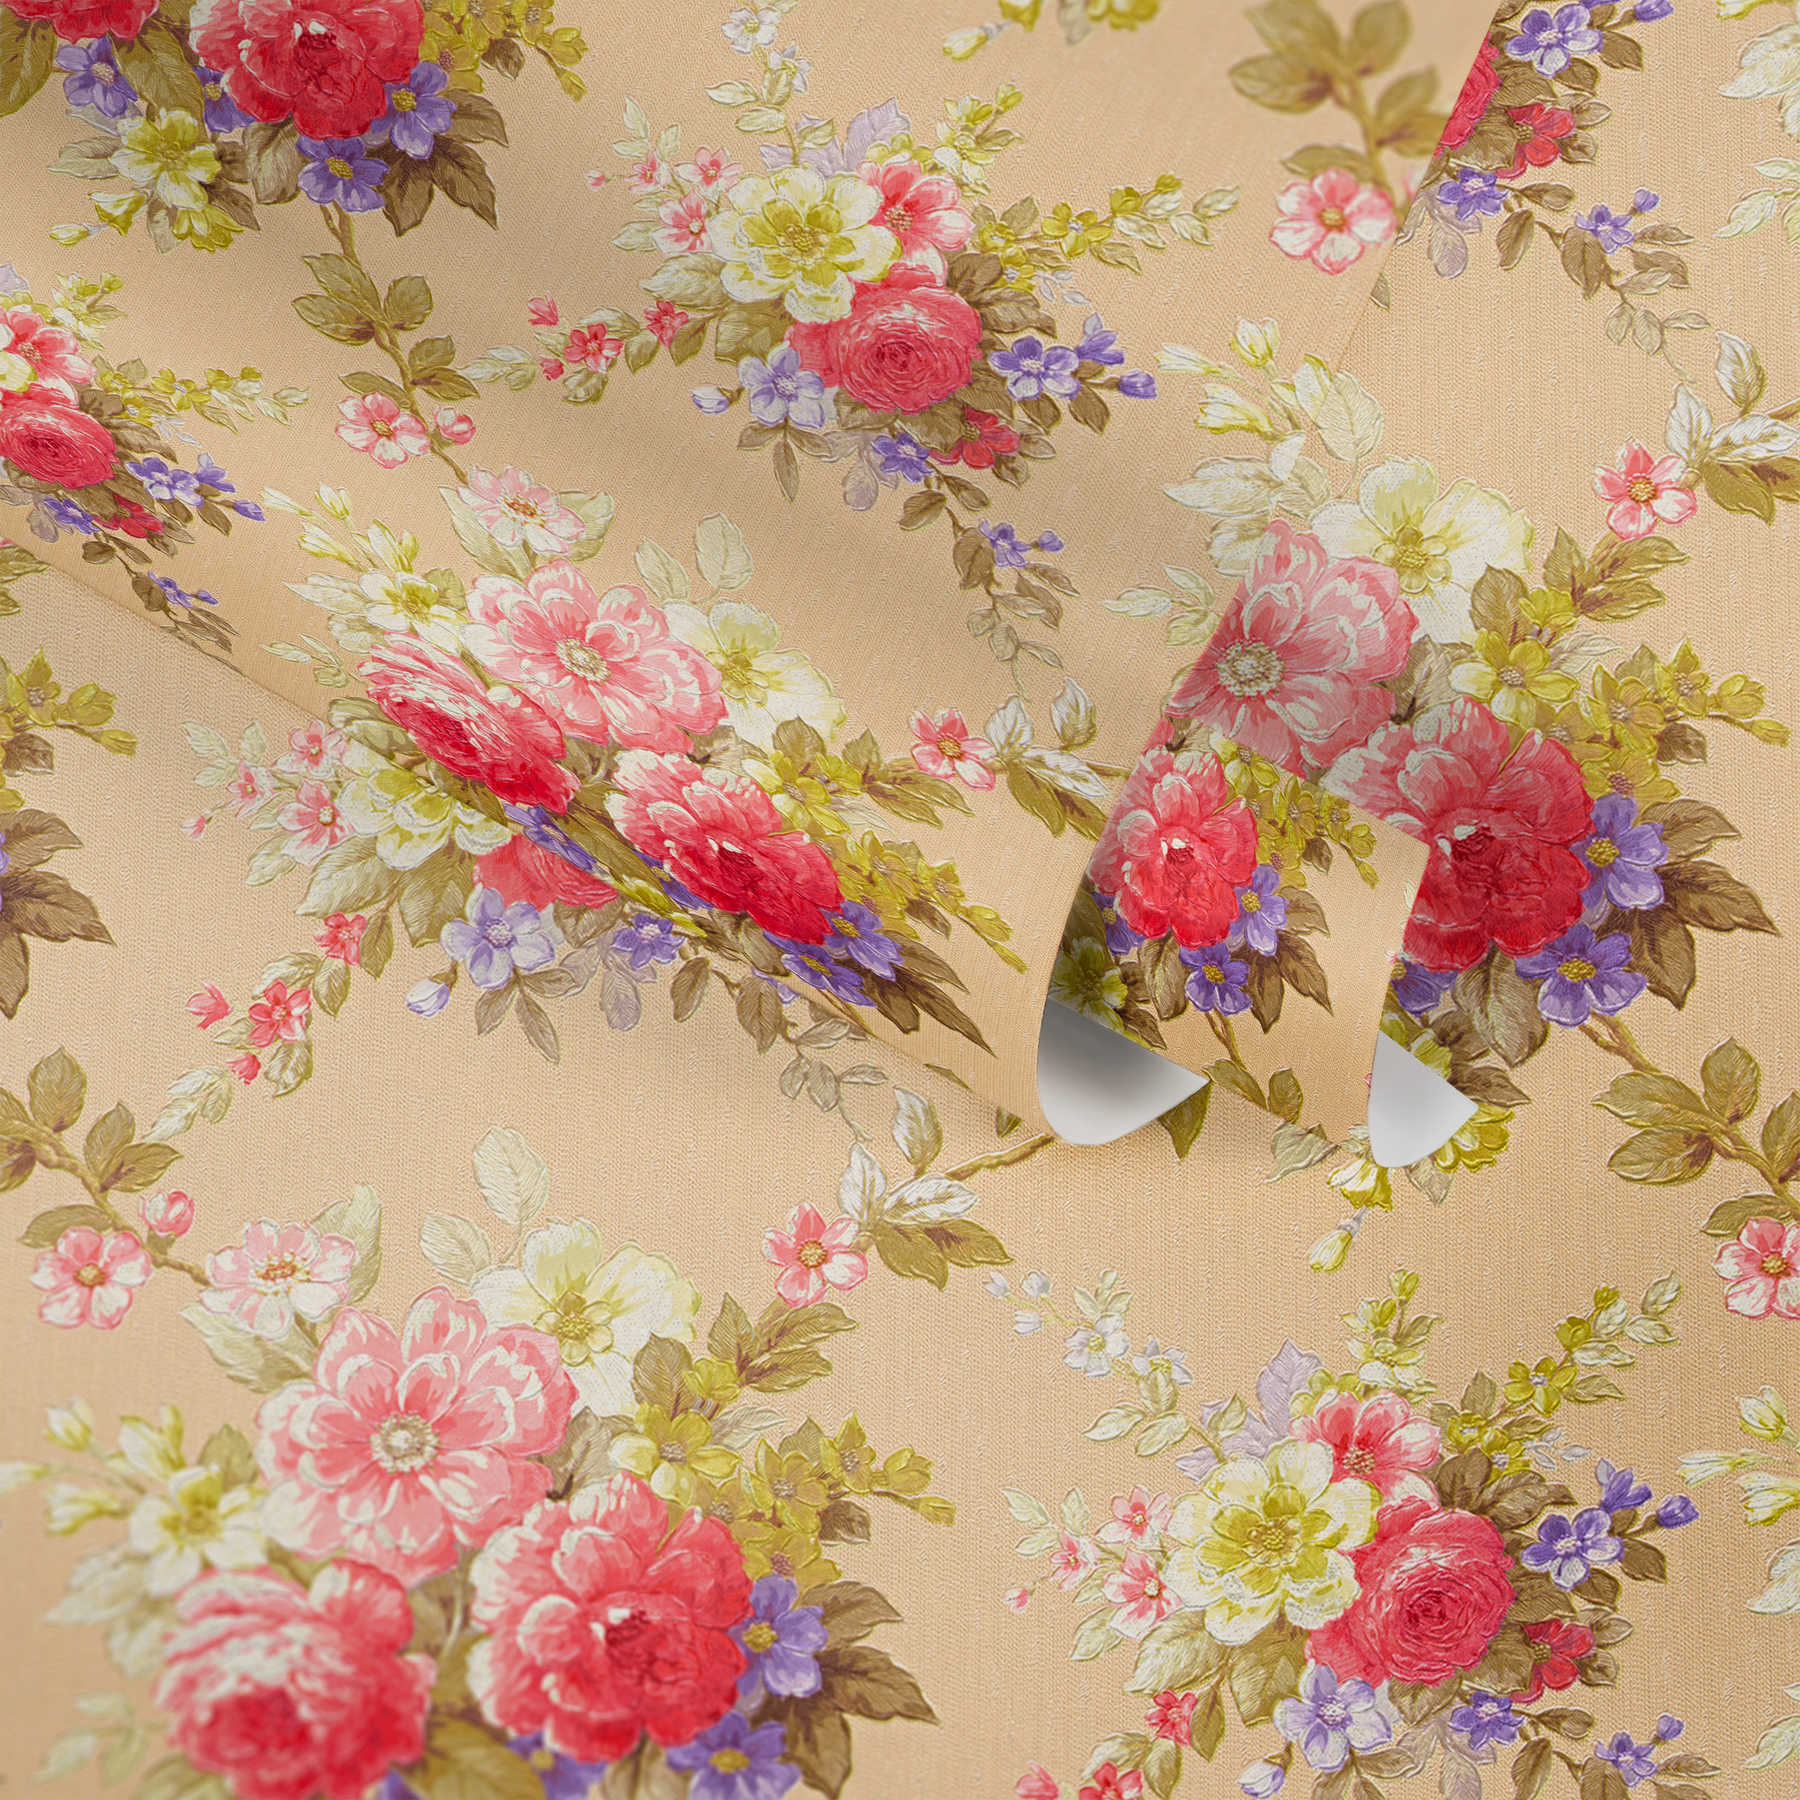             Papeles pintados Adornos de rosas patrón de ramo de flores - multicolor, metálico
        